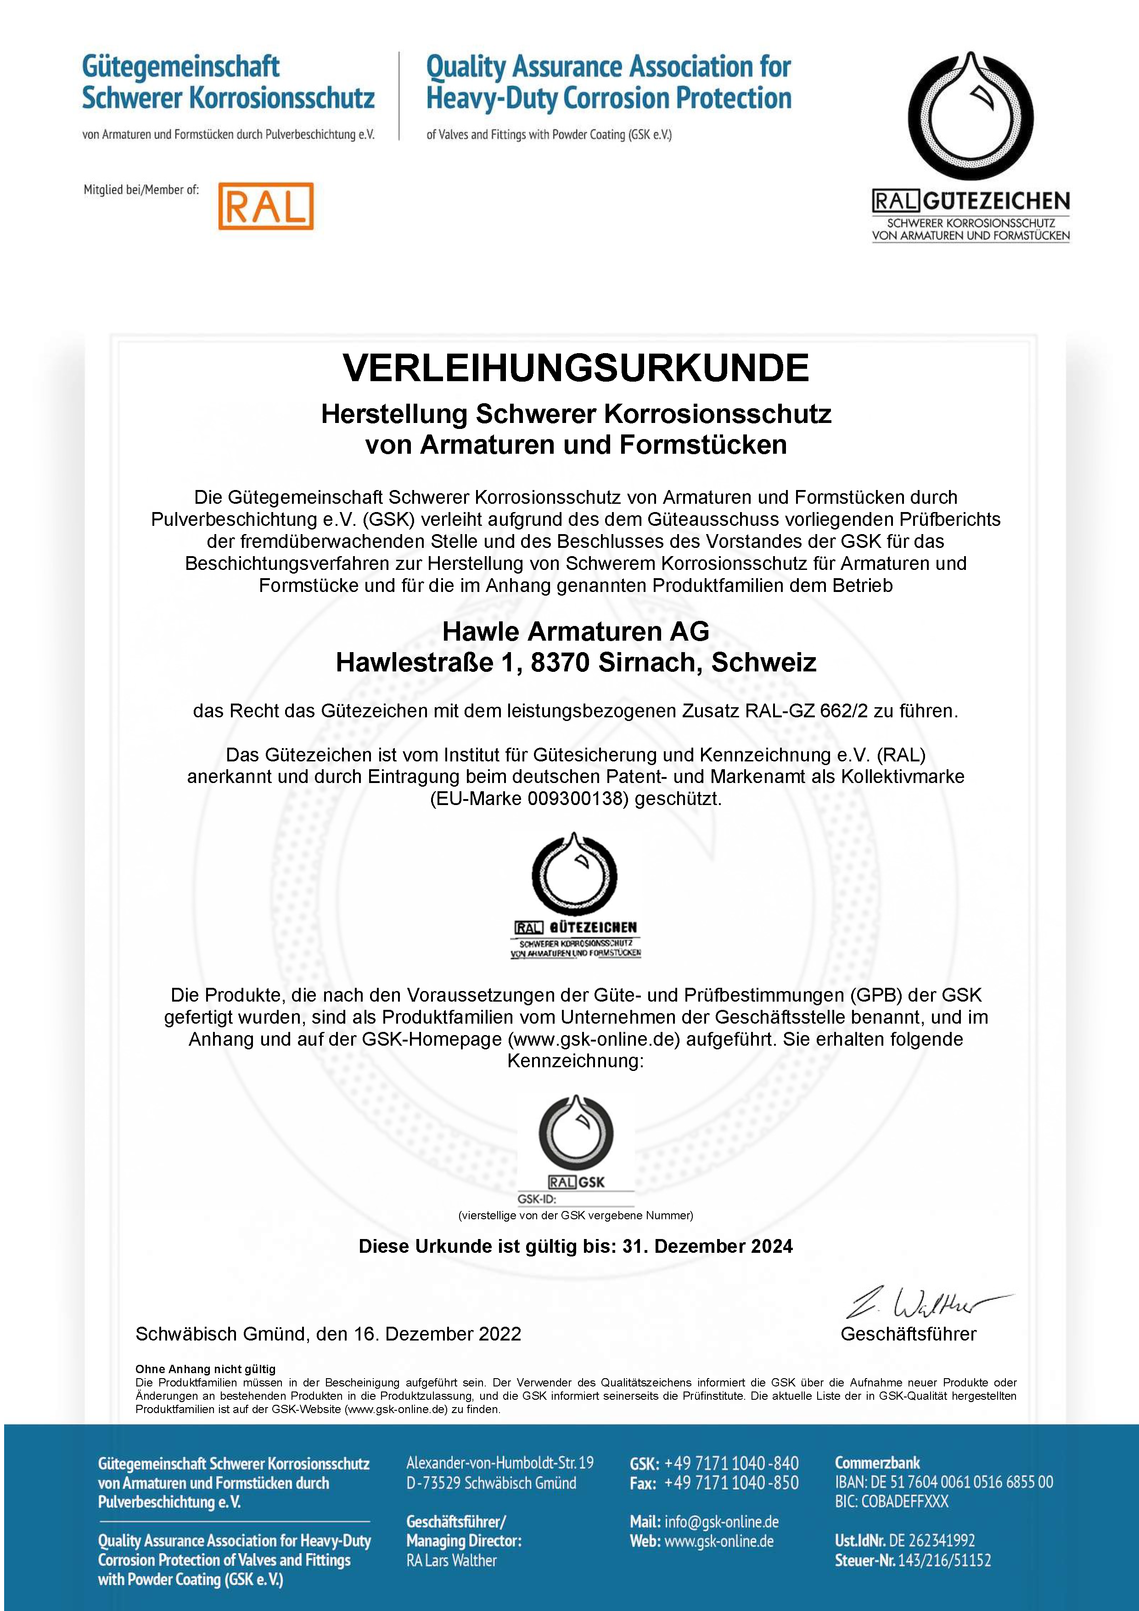 Qualitätsmanagement-Zertifikat ISO 9001:2015 der Firma Hawle Armaturen AG.